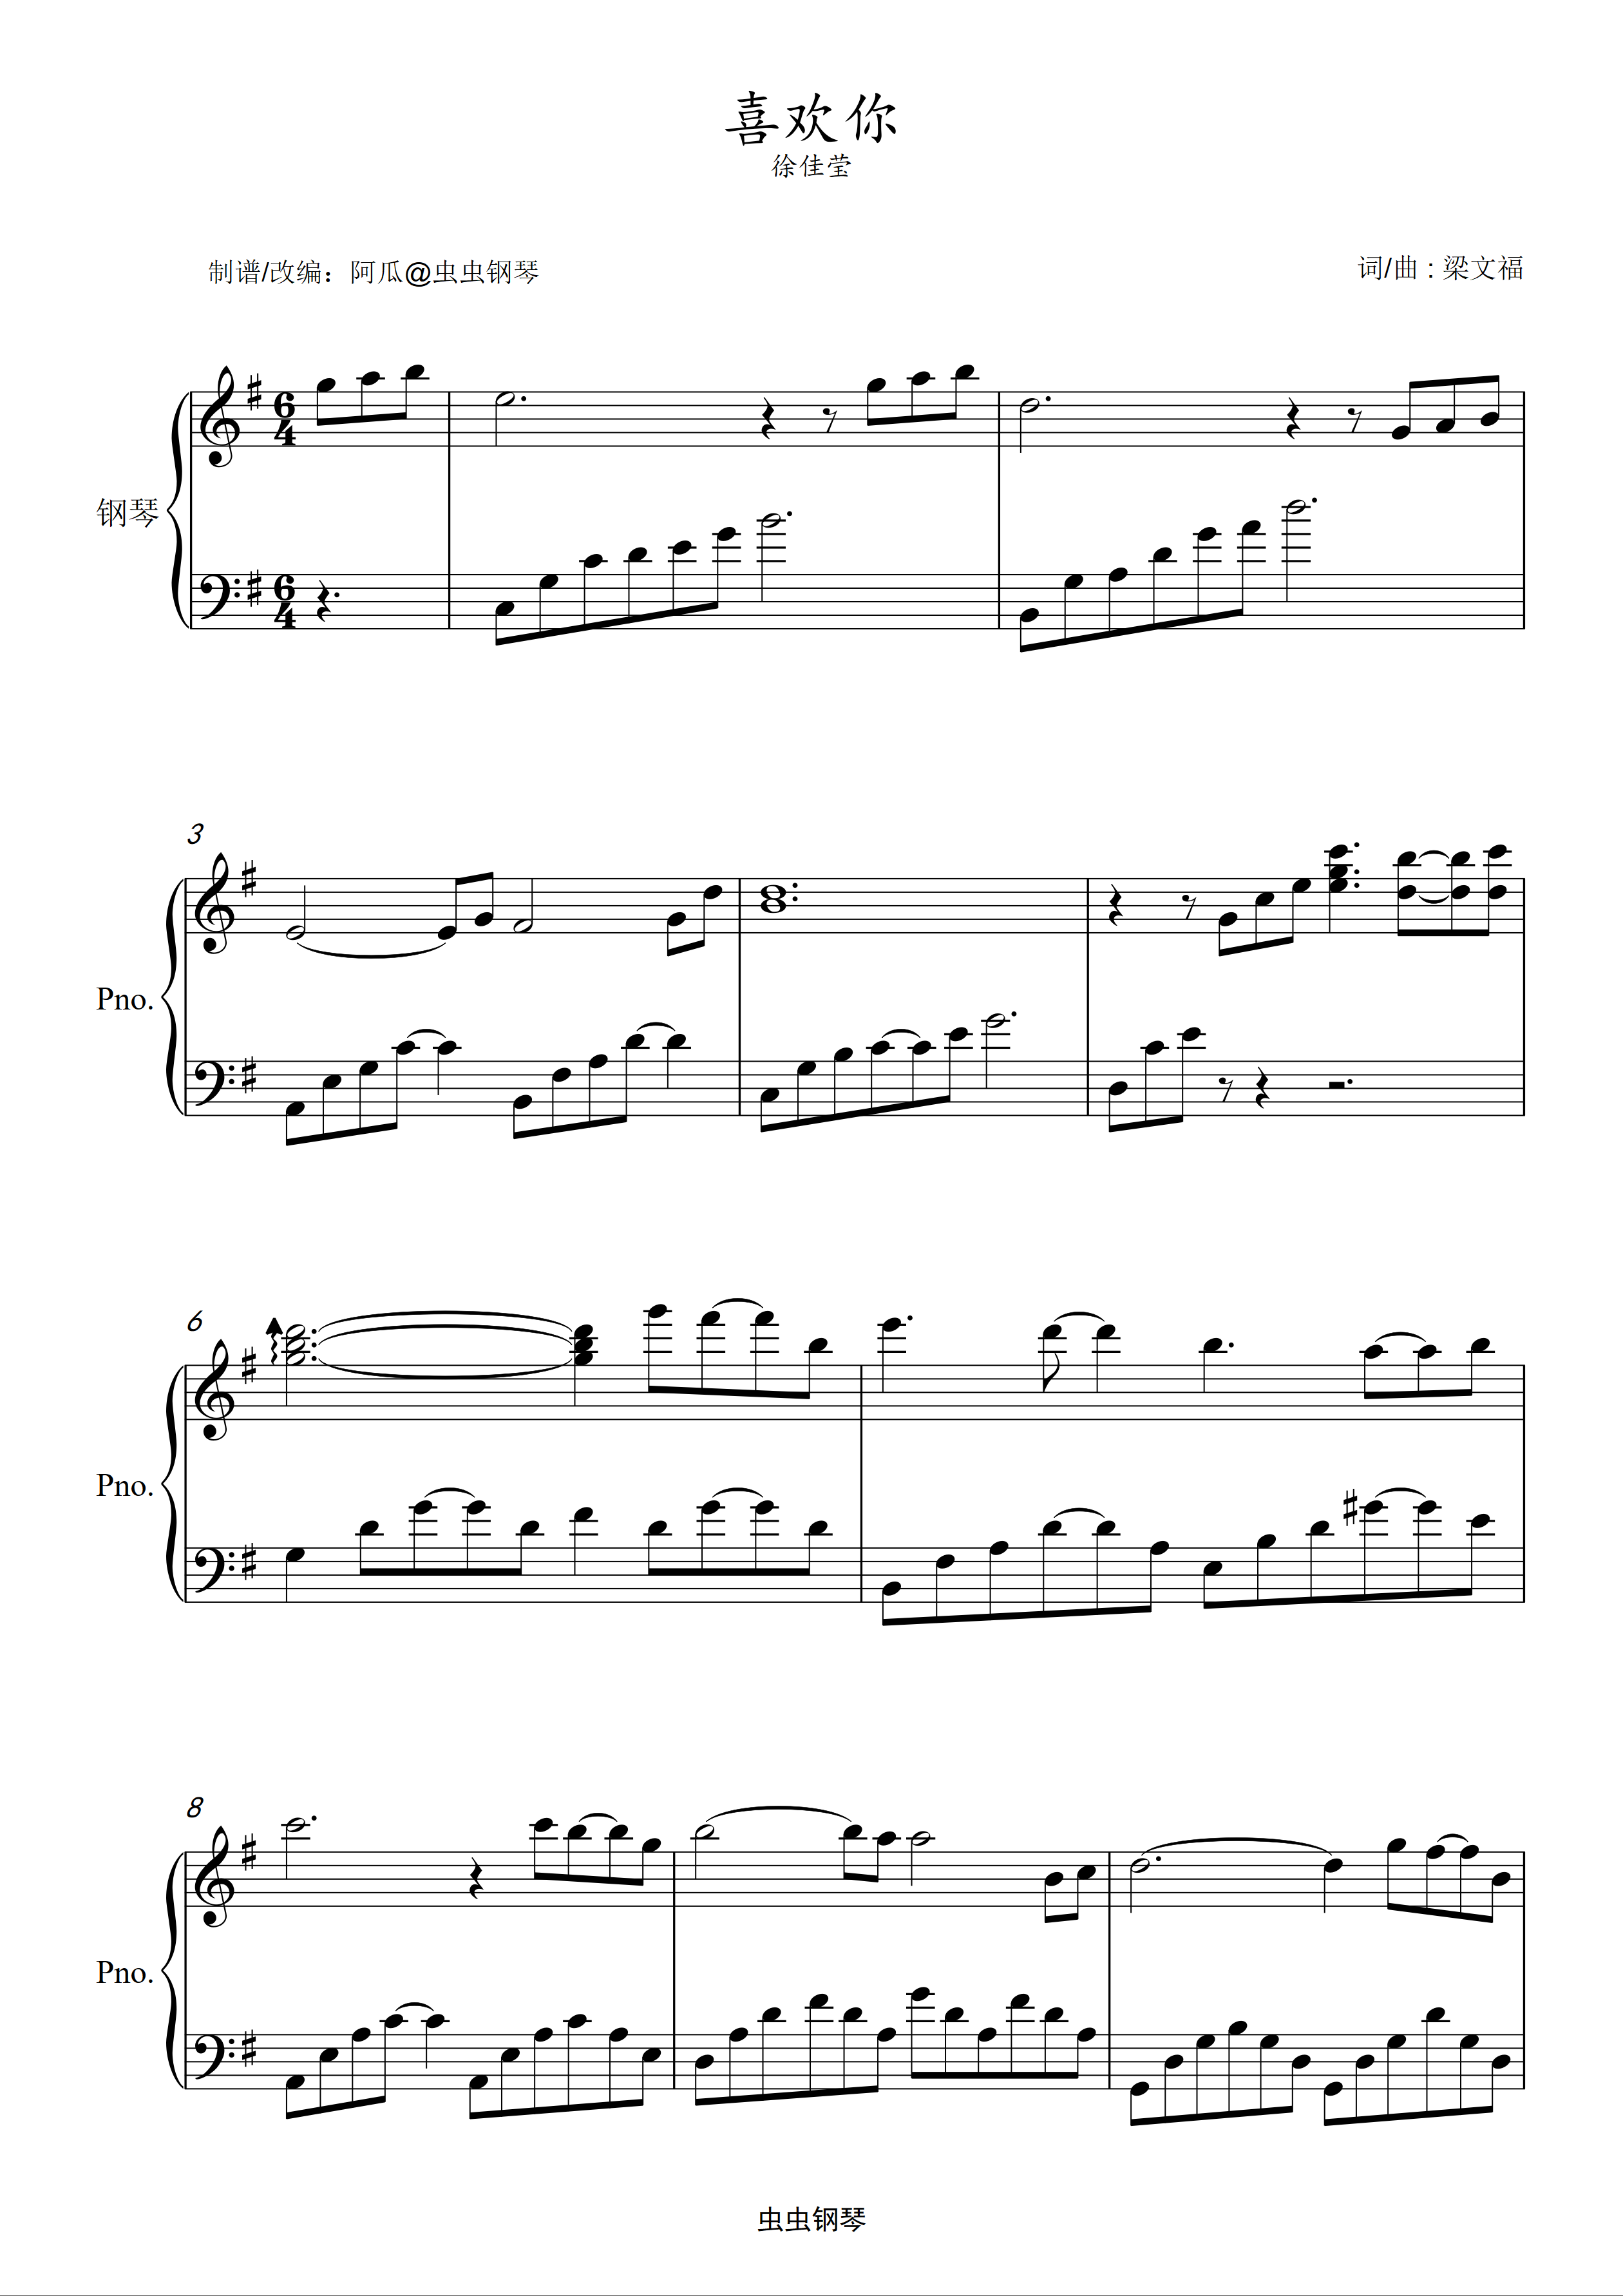 喜欢你-伴奏谱-徐佳莹双手简谱预览1-钢琴谱文件（五线谱、双手简谱、数字谱、Midi、PDF）免费下载